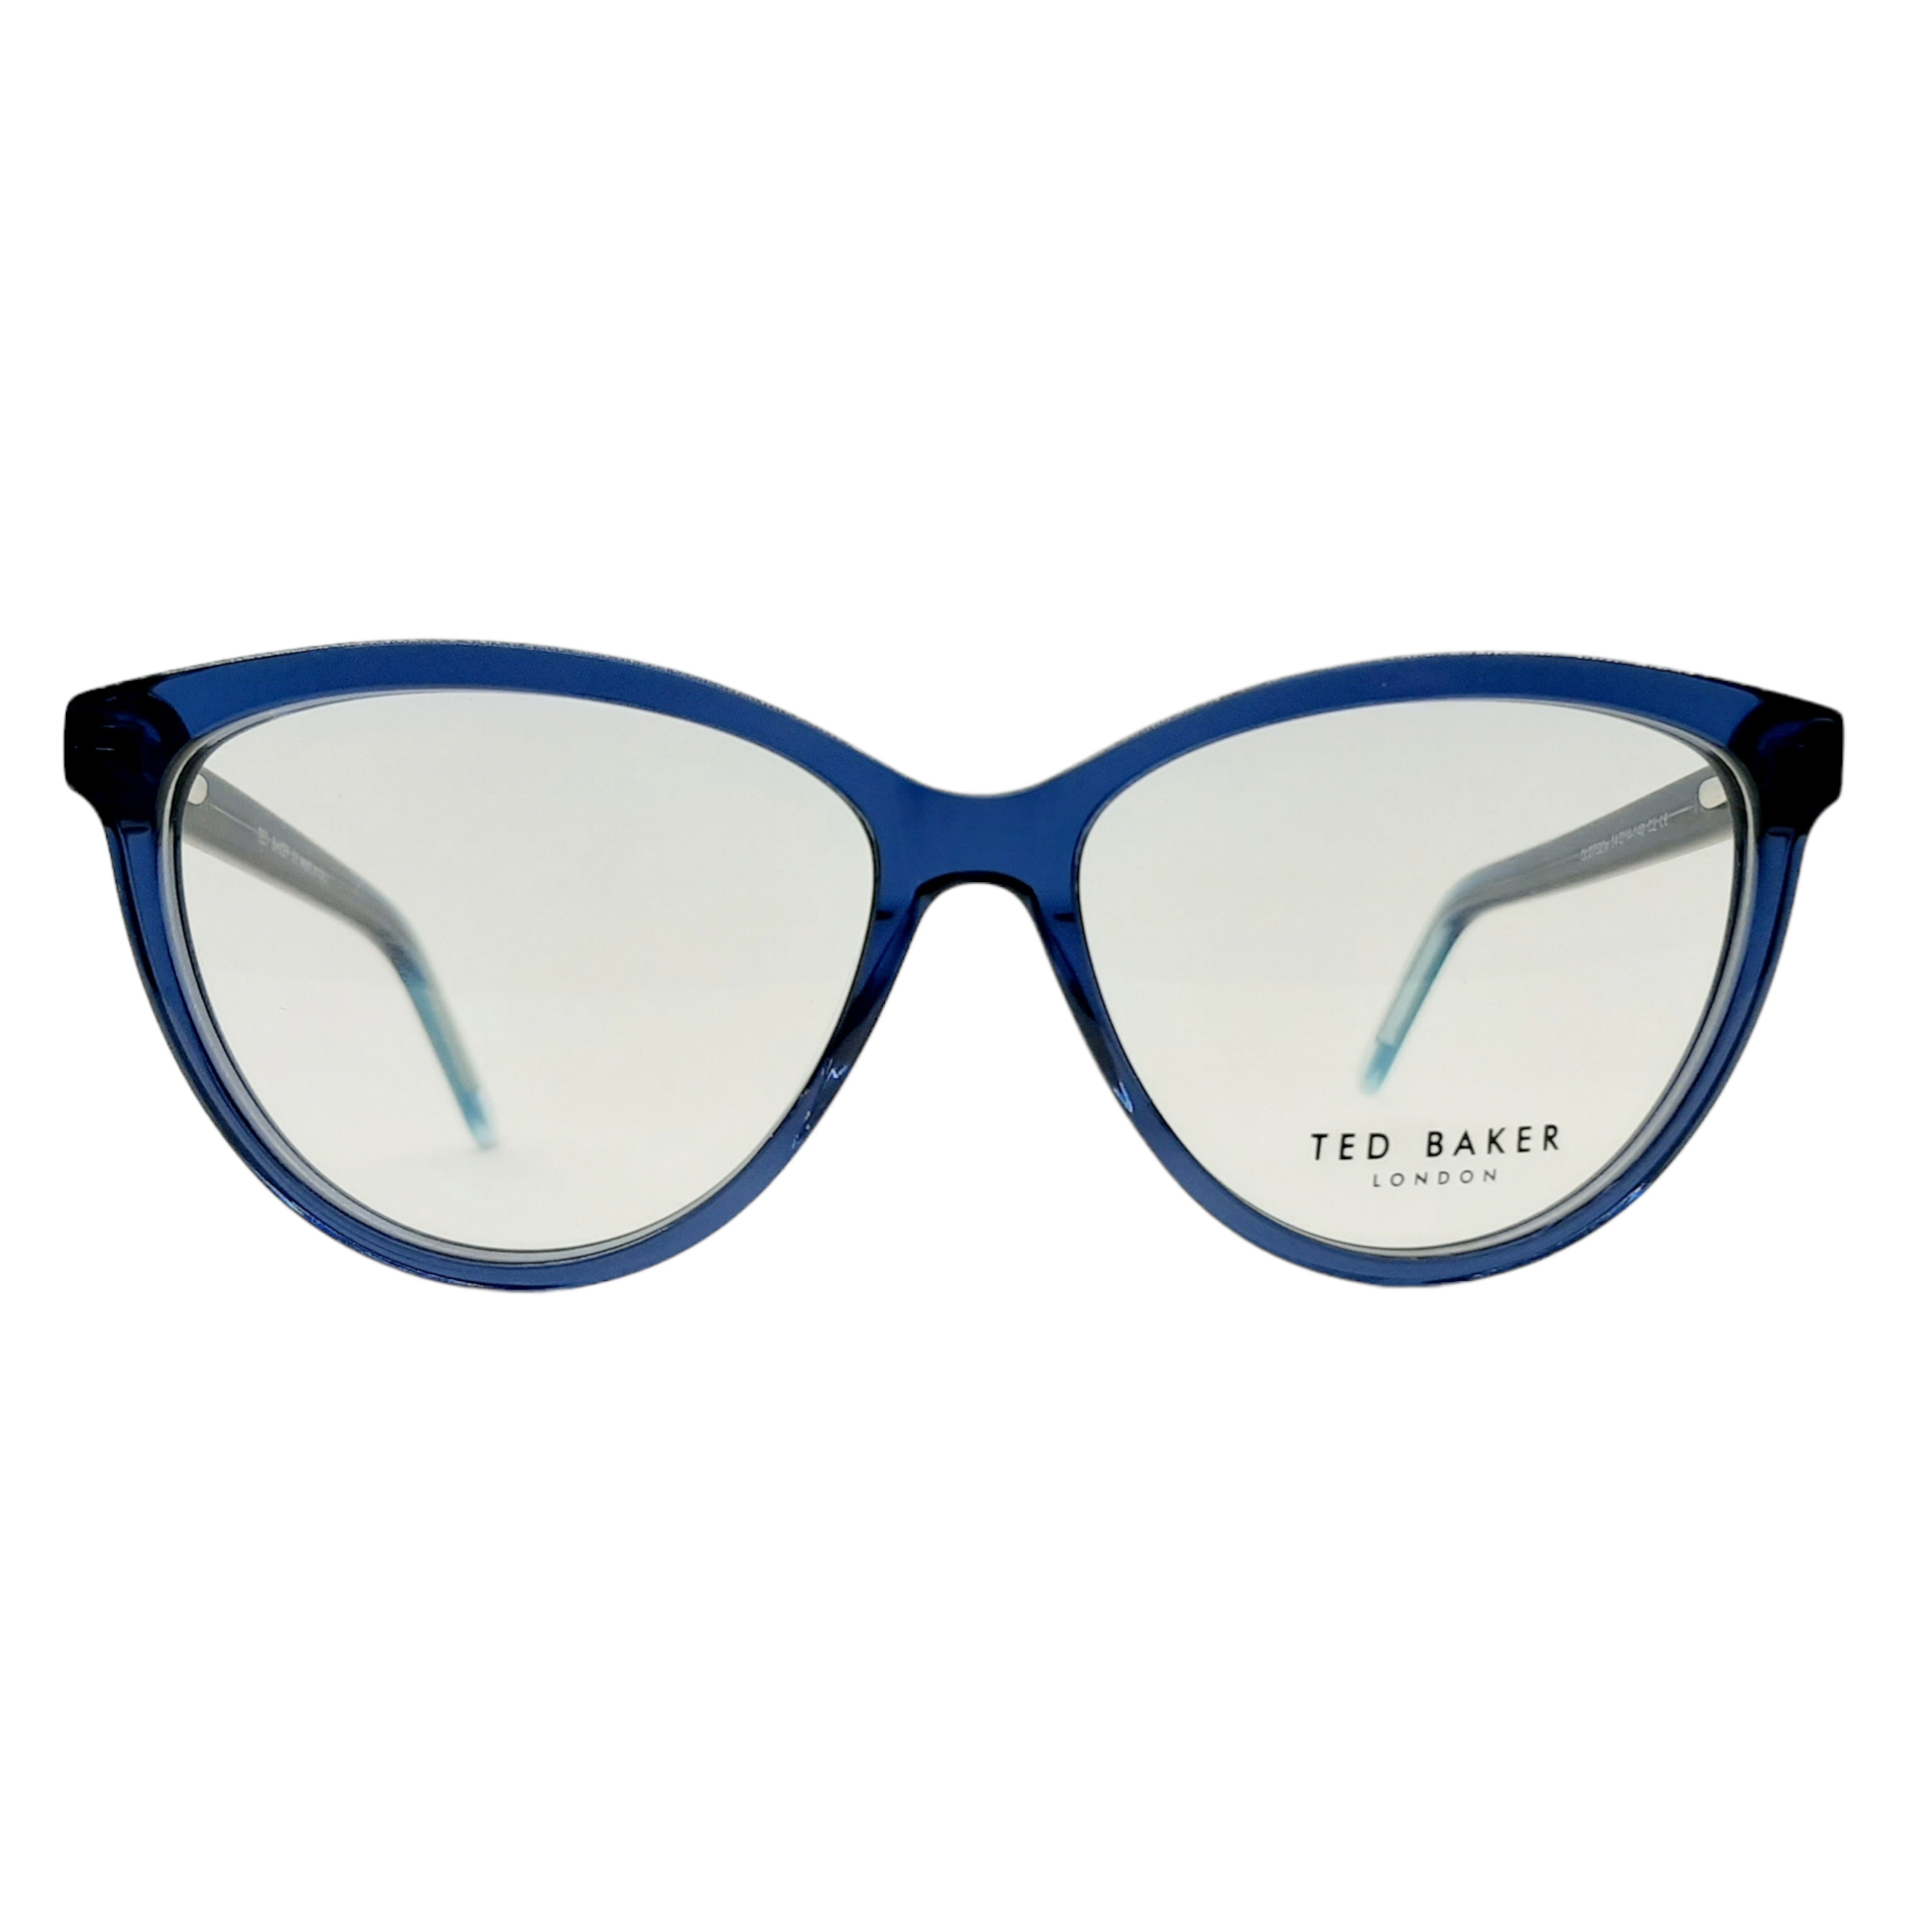 فریم عینک طبی زنانه تد بیکر مدل OLD7520Ac2